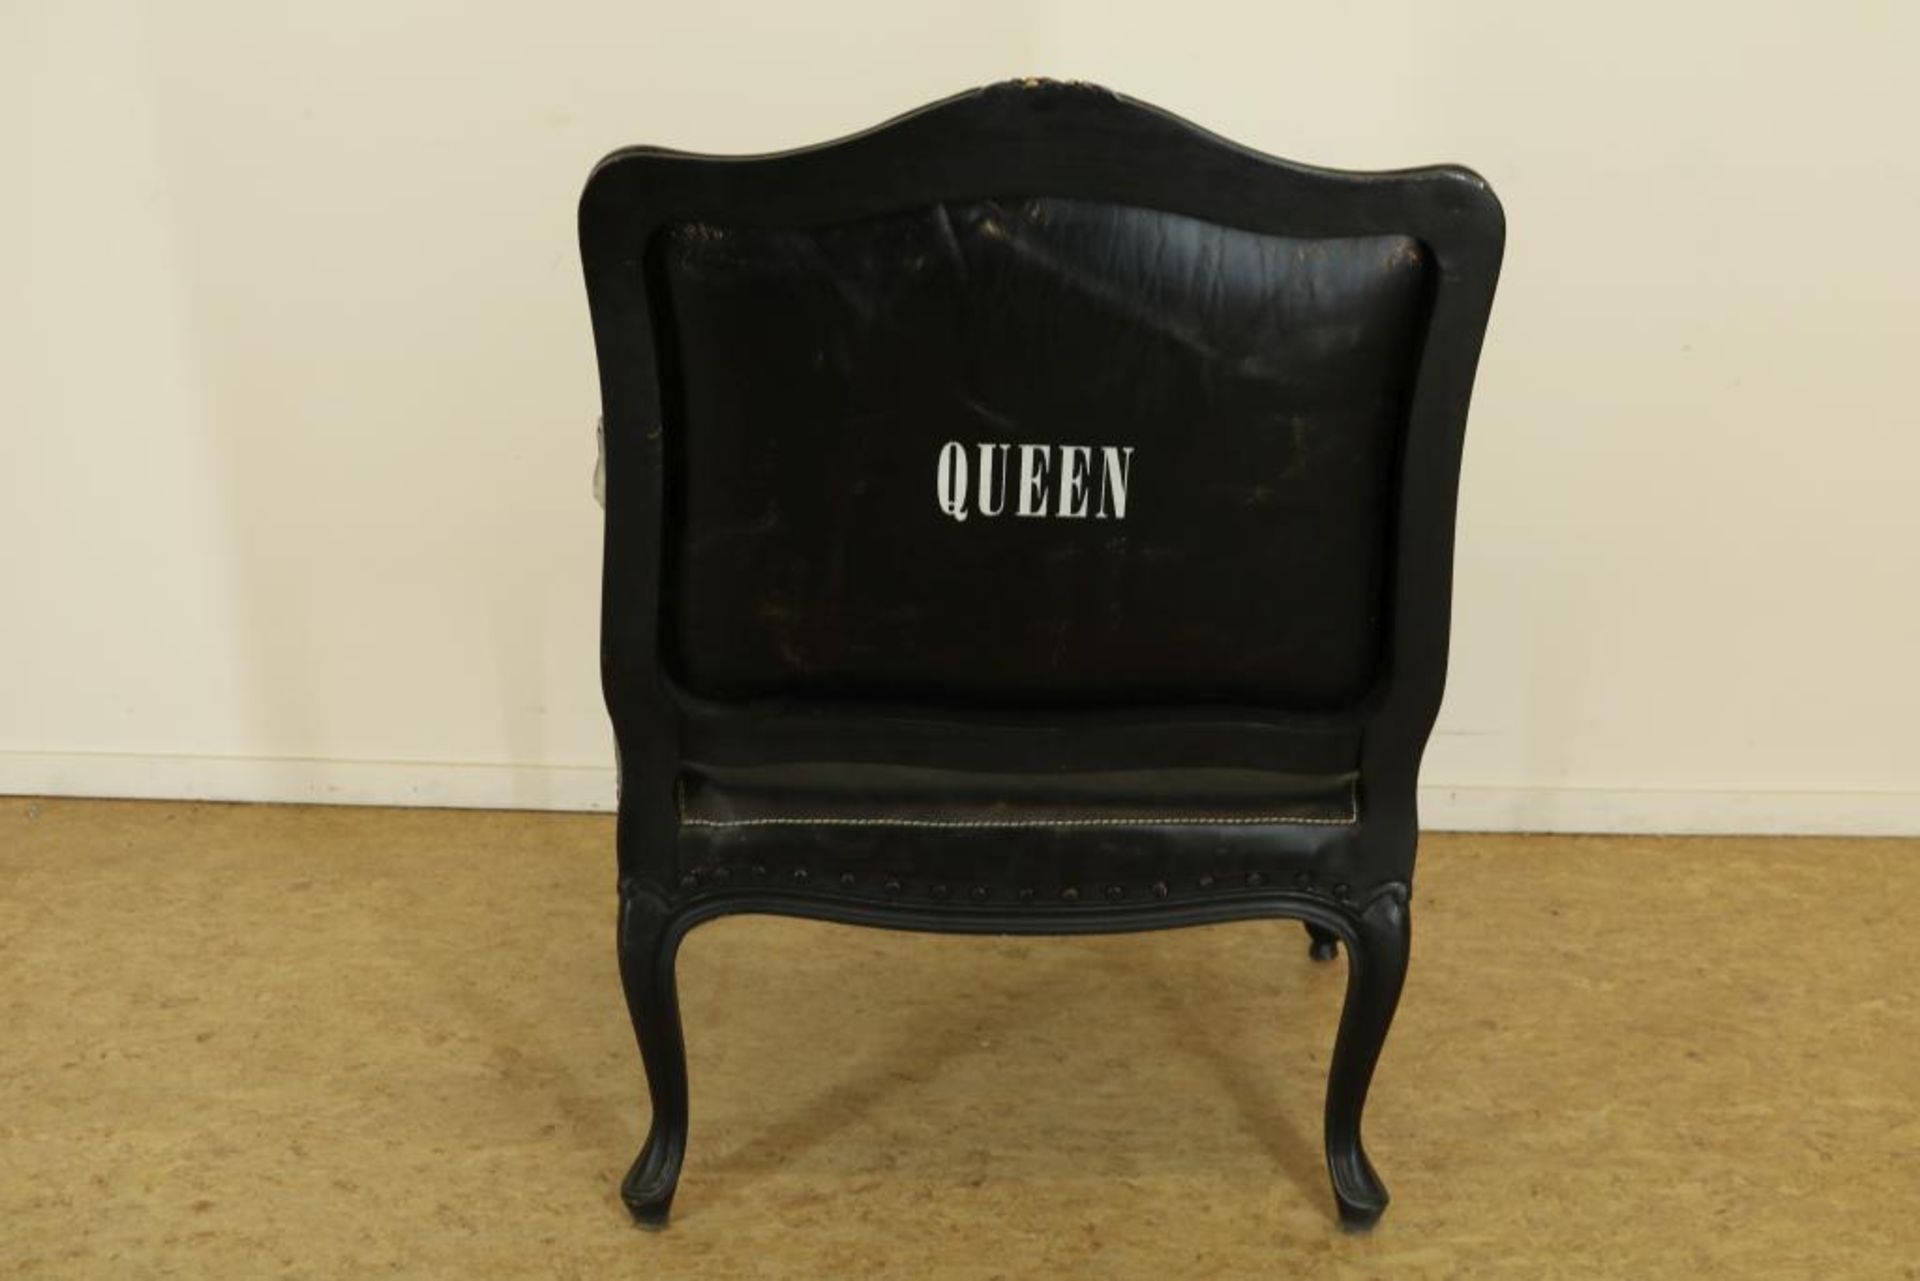 Zwartlak dames fauteuil bekleed met zwart leer, en zebra print waarop achterzijde: "Queen", - Bild 4 aus 4